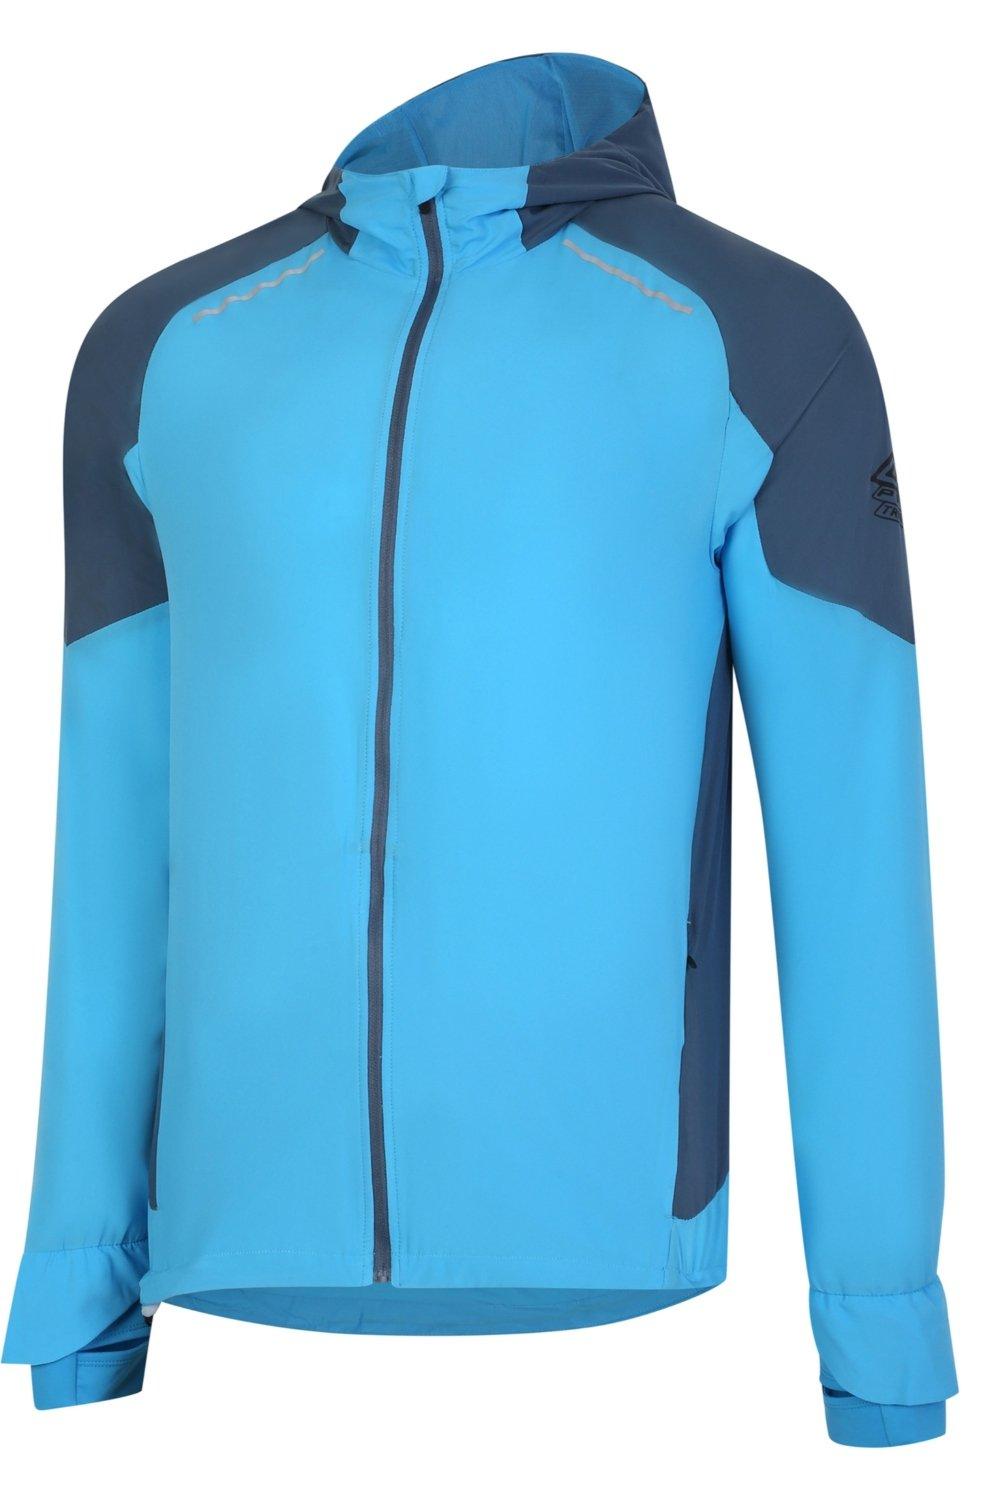 Легкая куртка Pro Training Elite Umbro, синий футболка umbro футболка тренировочная umbro pro training graphic 65845u kmk размер l серый черный